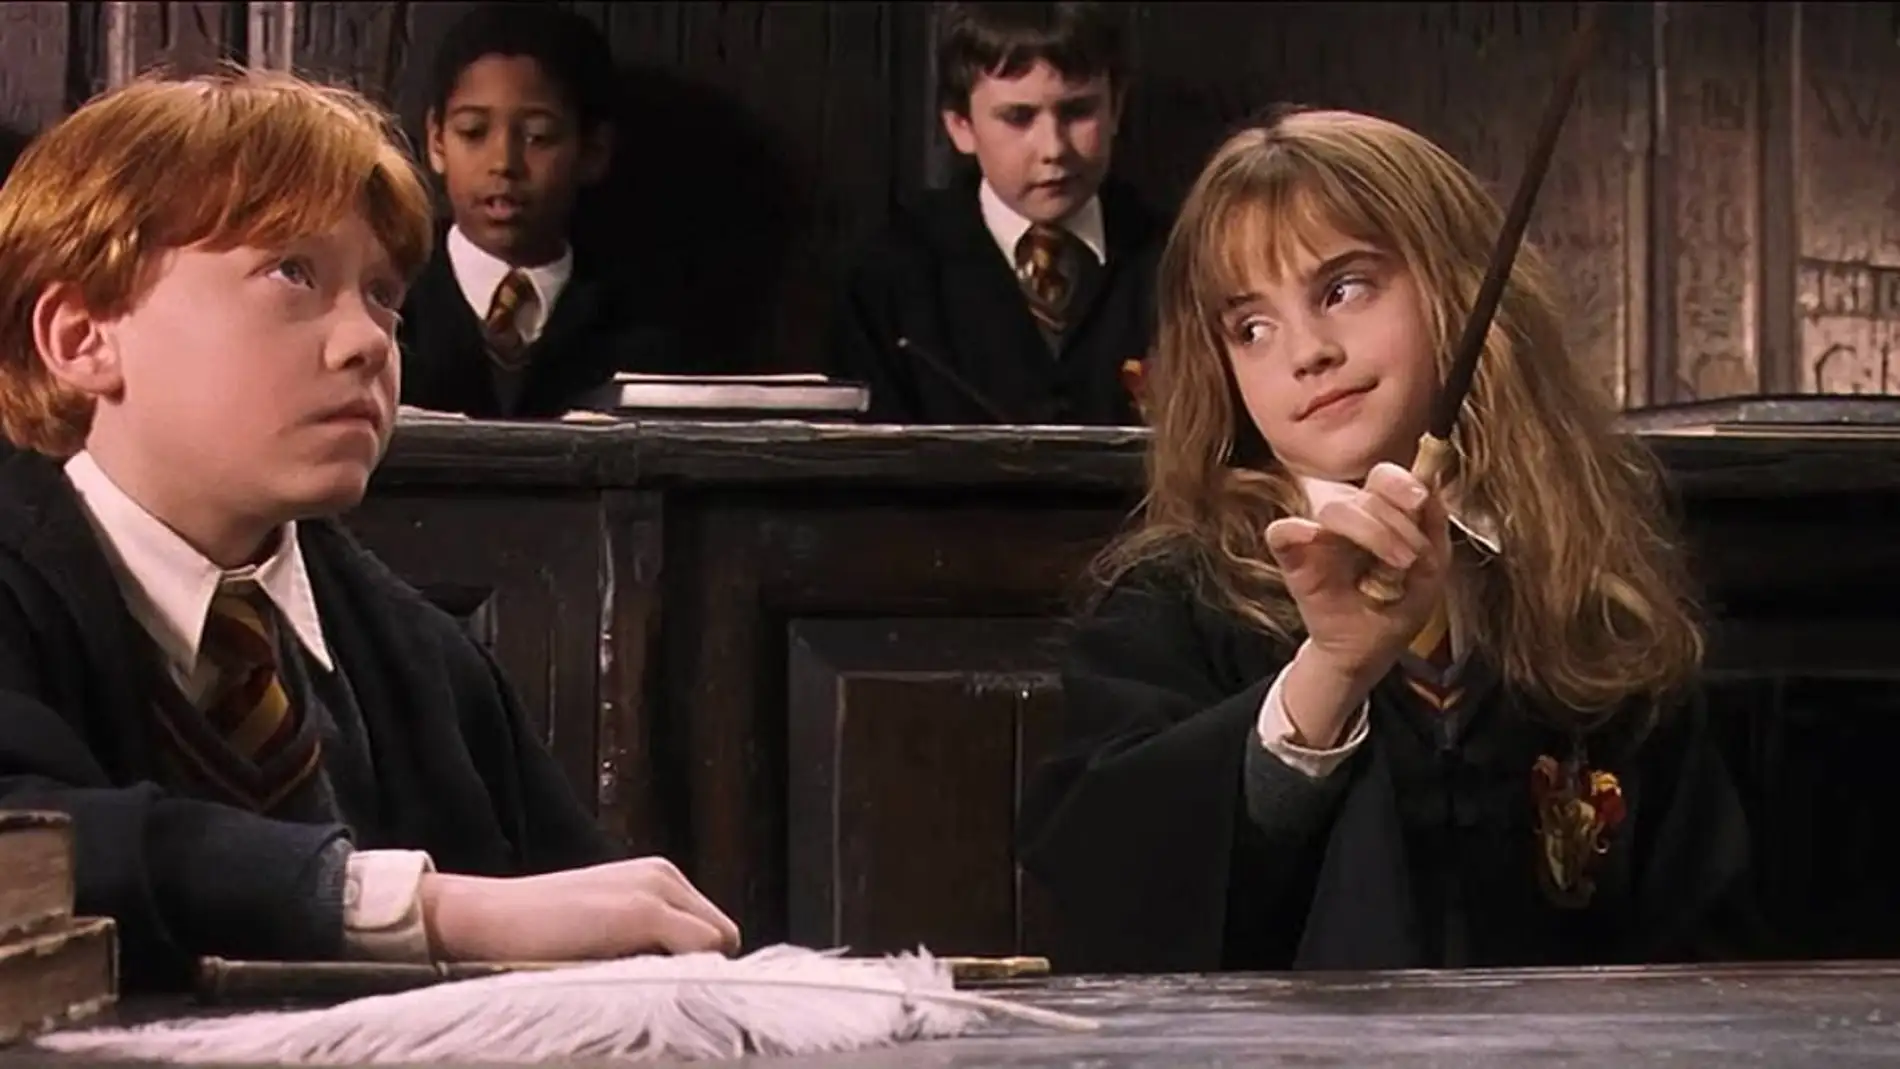 Ron y Hermione en pleno Wingardium Leviosa